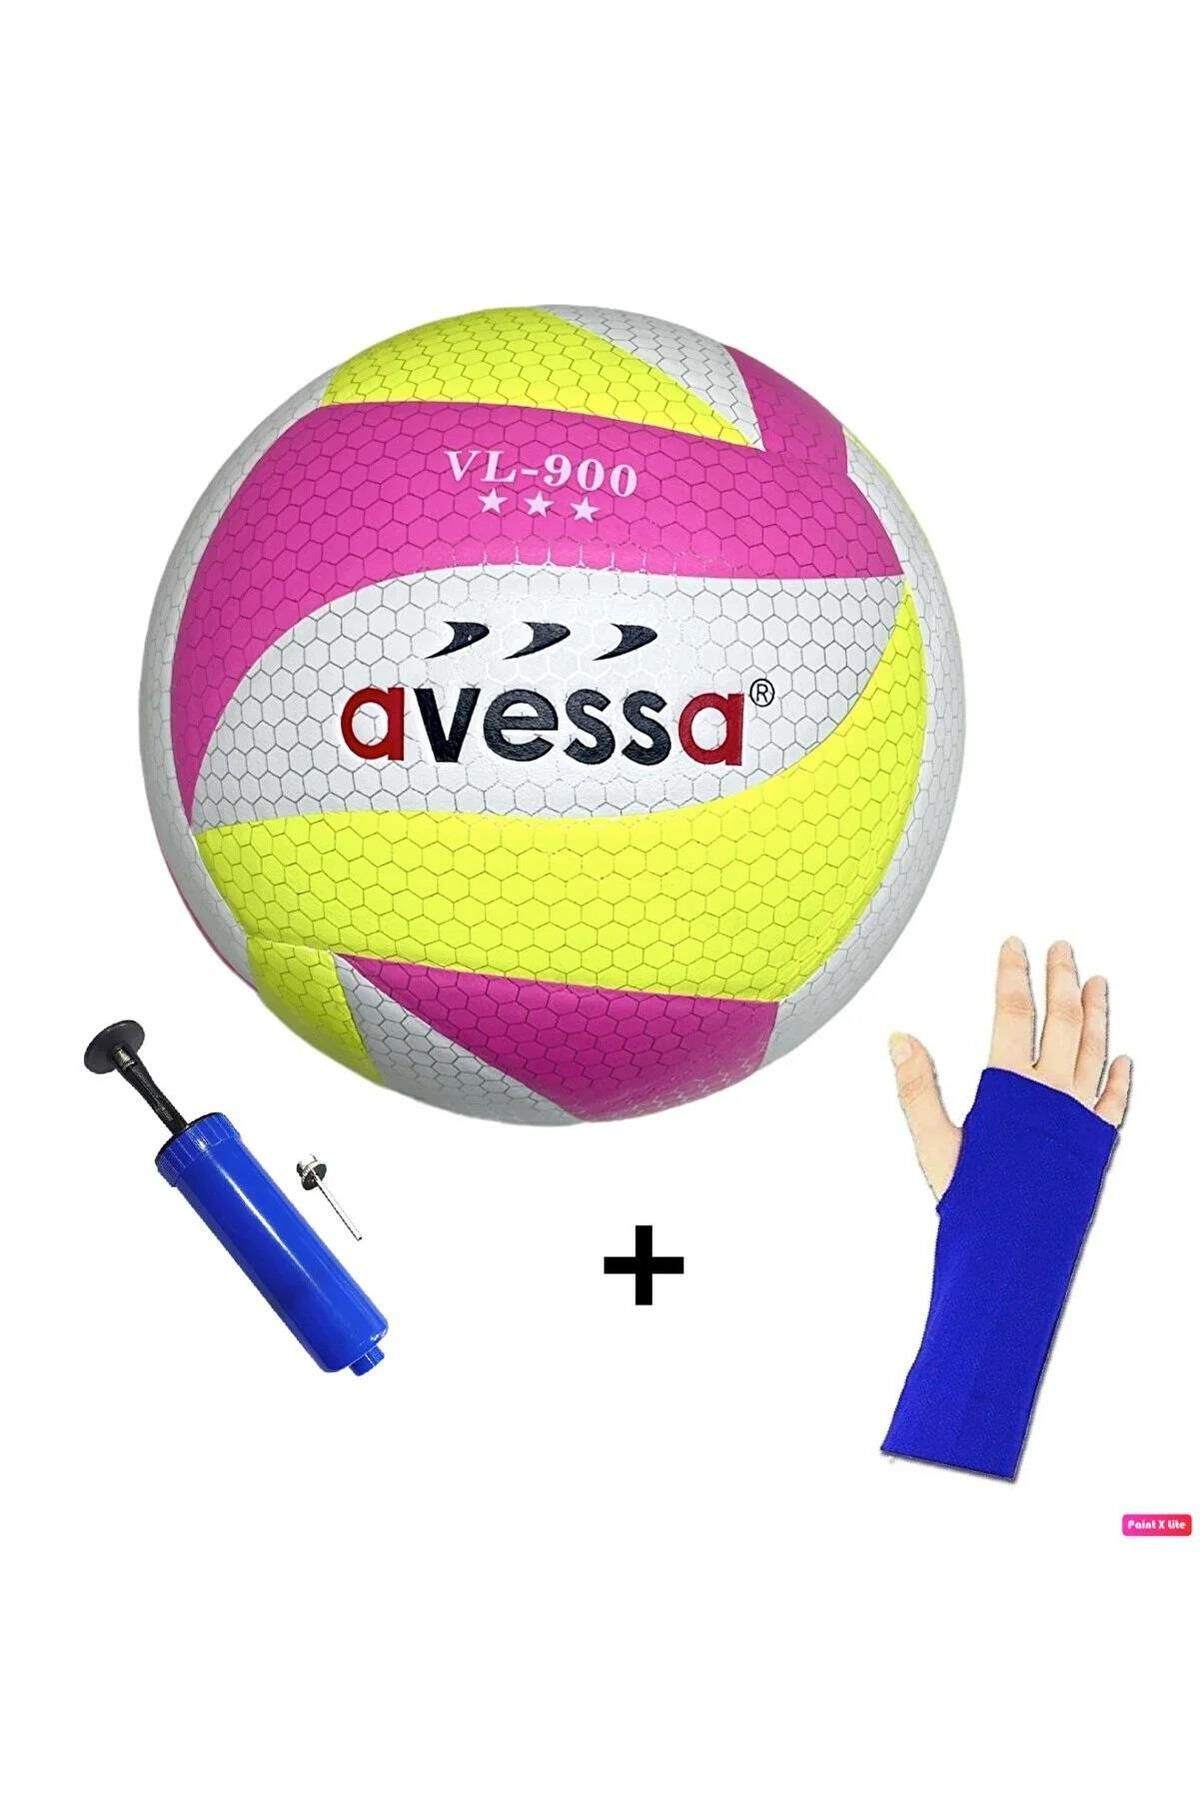 Avessa Vl-900 Yumuşak Yapıştırma Voleybol Topu Pompa ve Kolluk Set